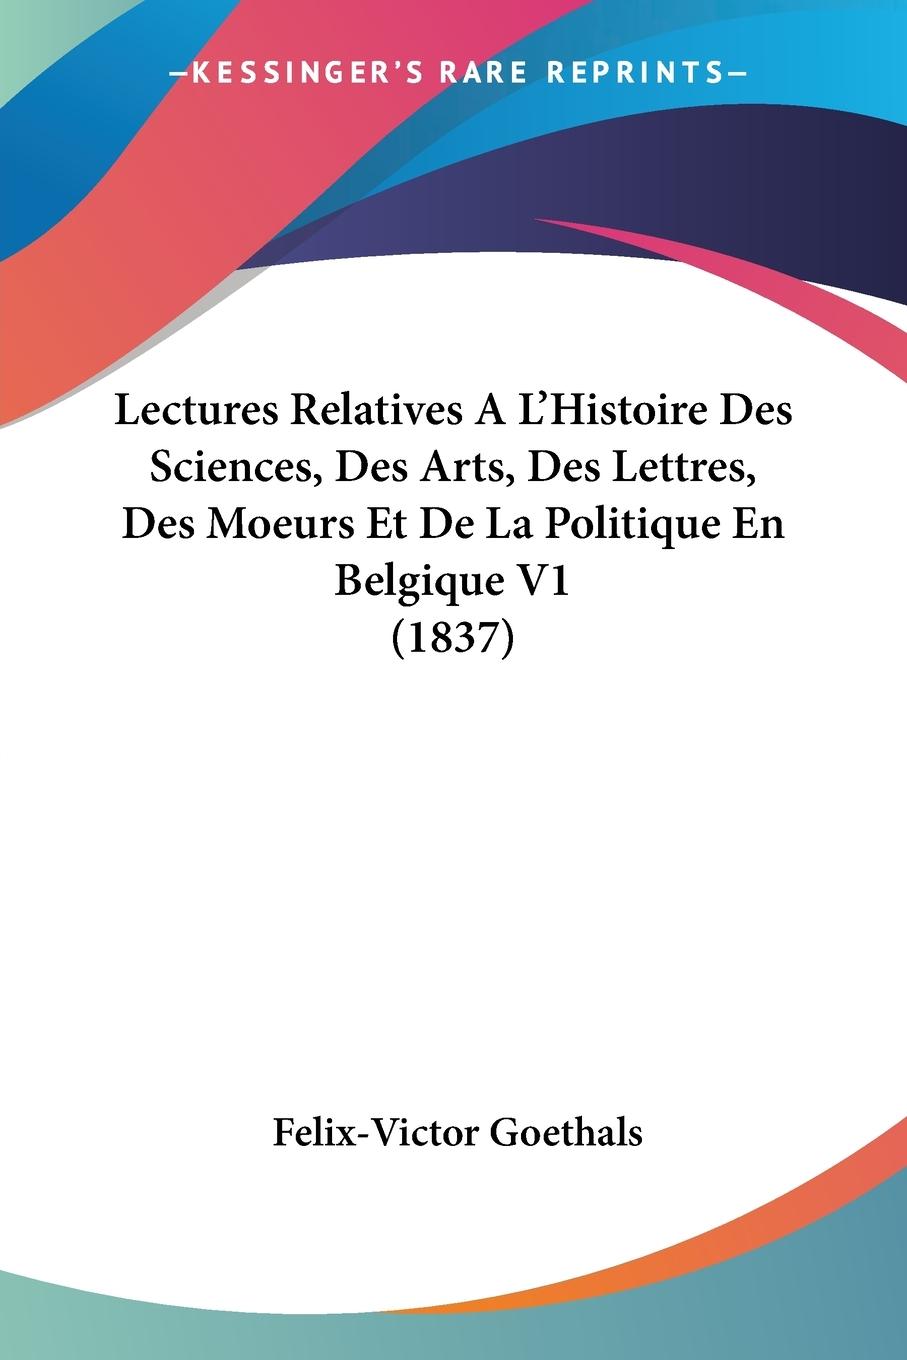 Lectures Relatives A L Histoire Des Sciences, Des Arts, Des Lettres, Des Moeurs Et De La Politique En Belgique V1 (1837) - Goethals, Felix-Victor